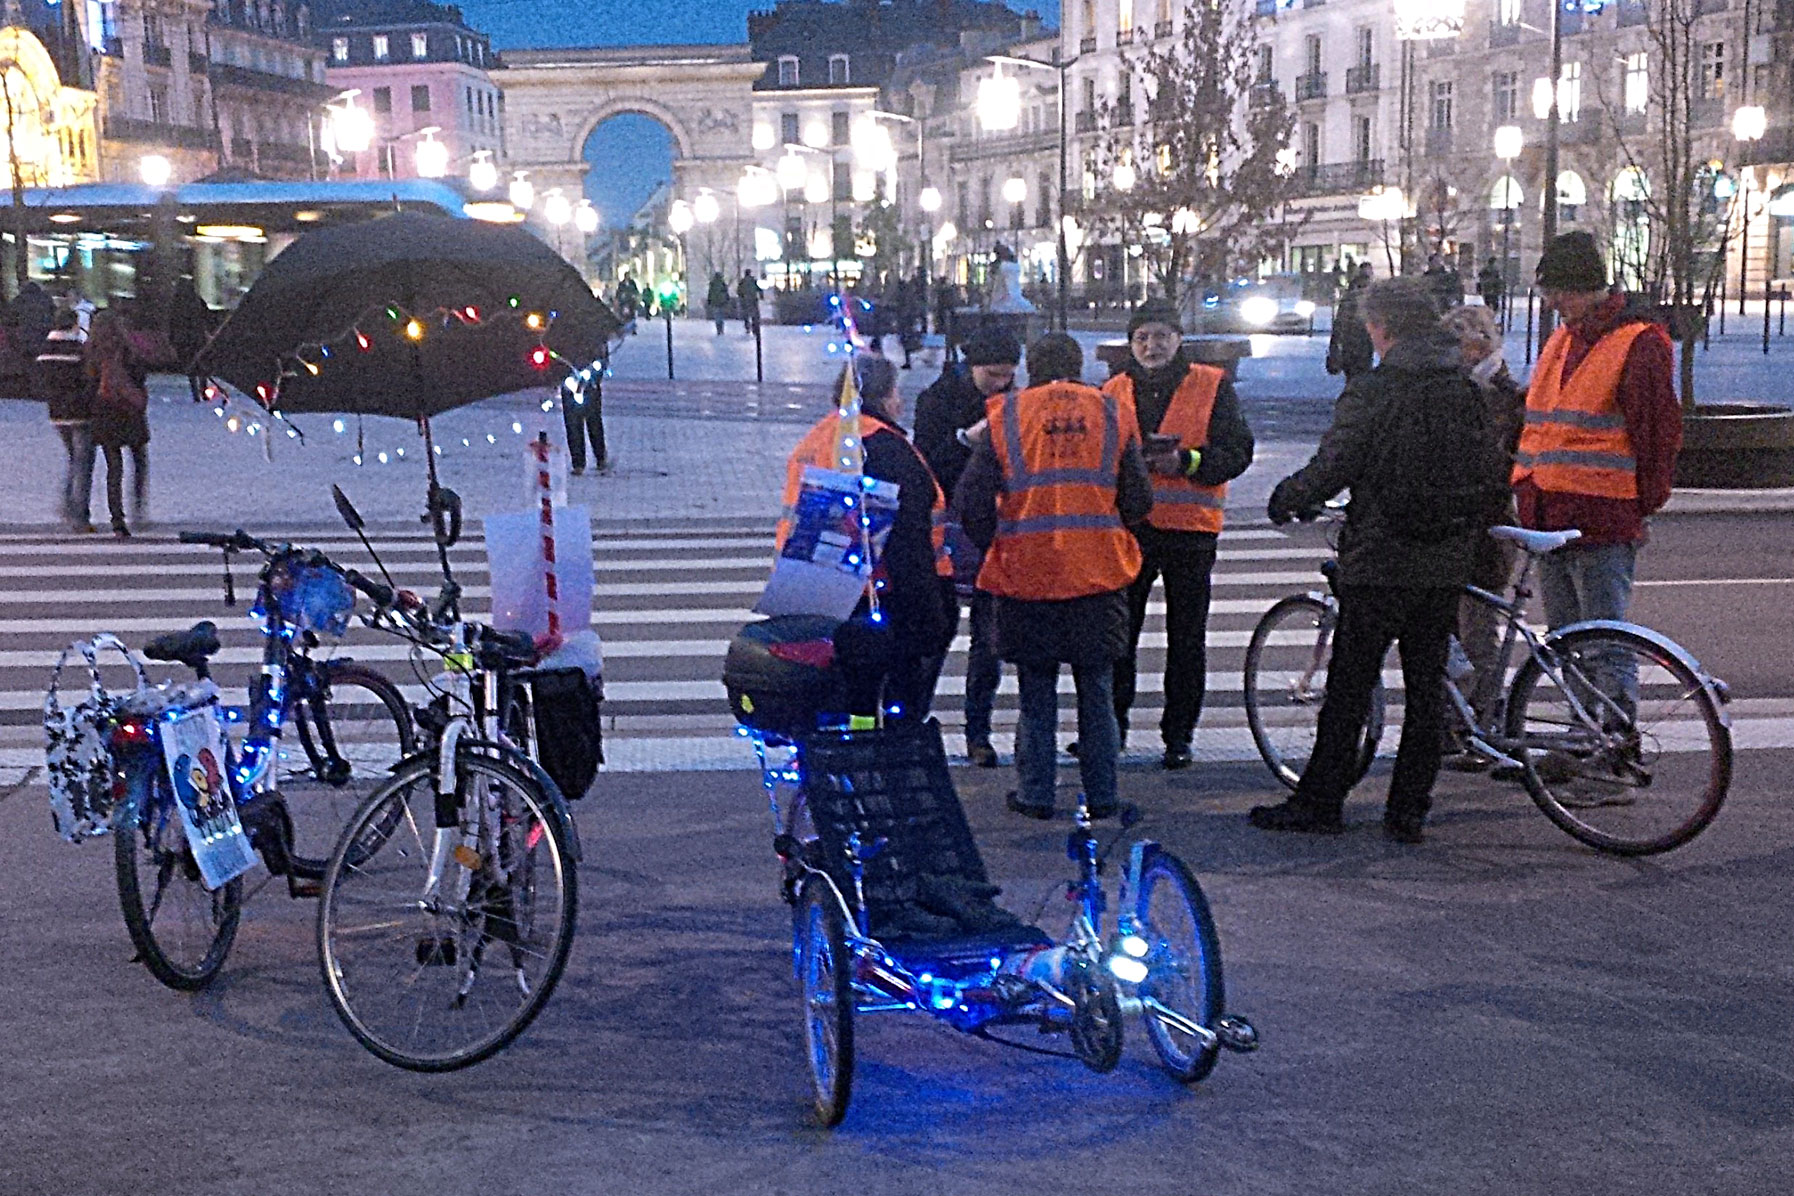 Cyclistes dijonnais, la nuit soyez visibles : brillez !